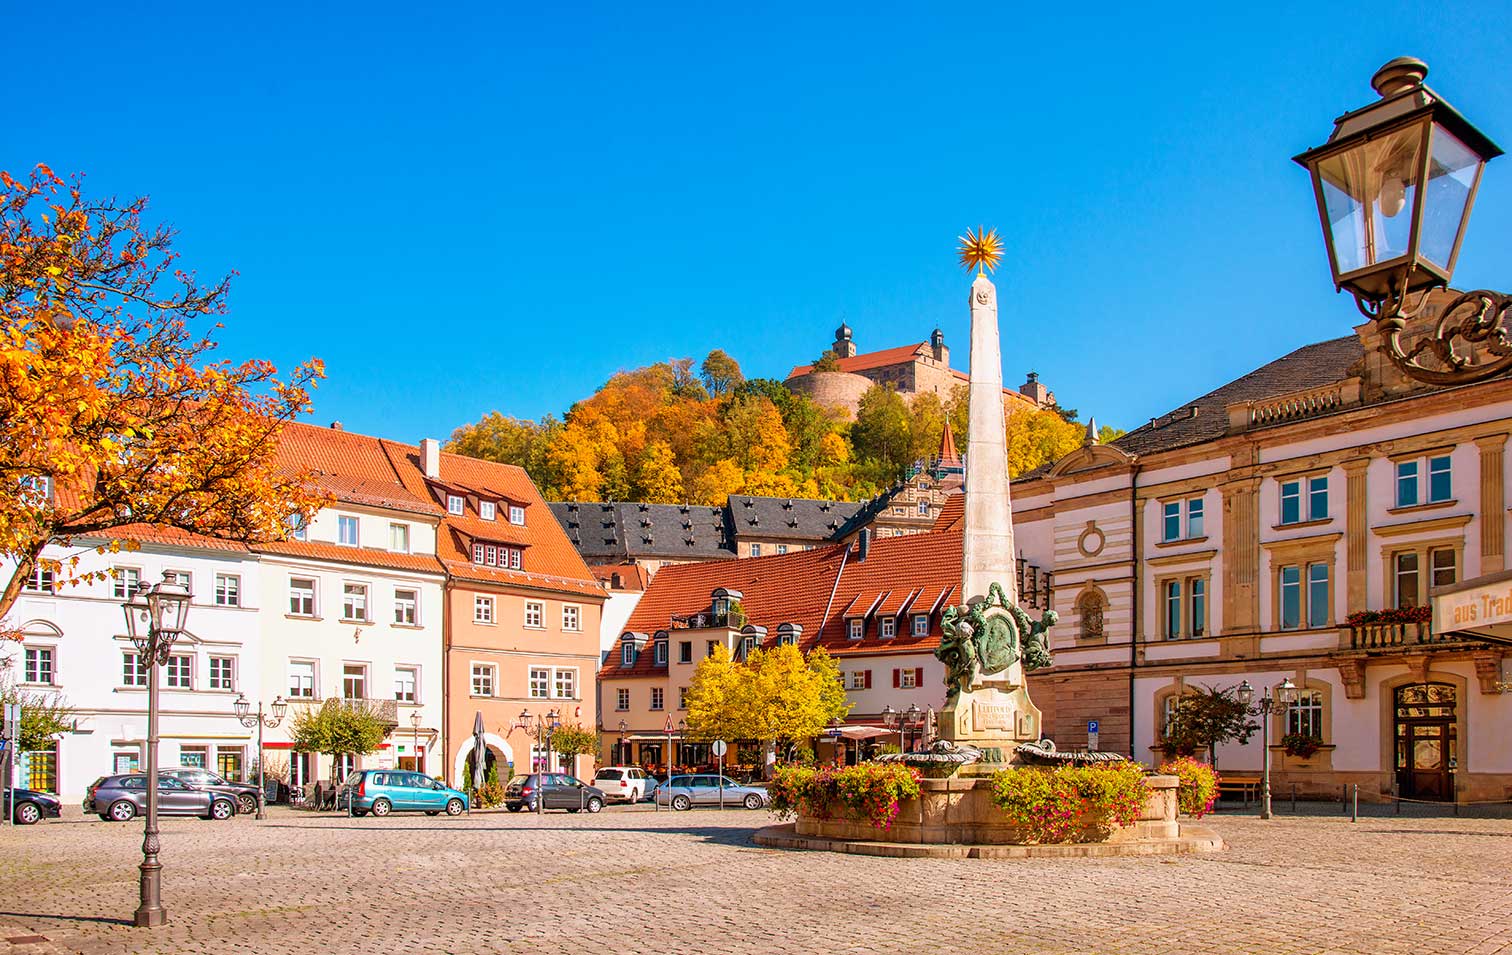 Foto vom Marktplatz in Kulmbach, im Hintergrund ist die Plassenburg zu sehen